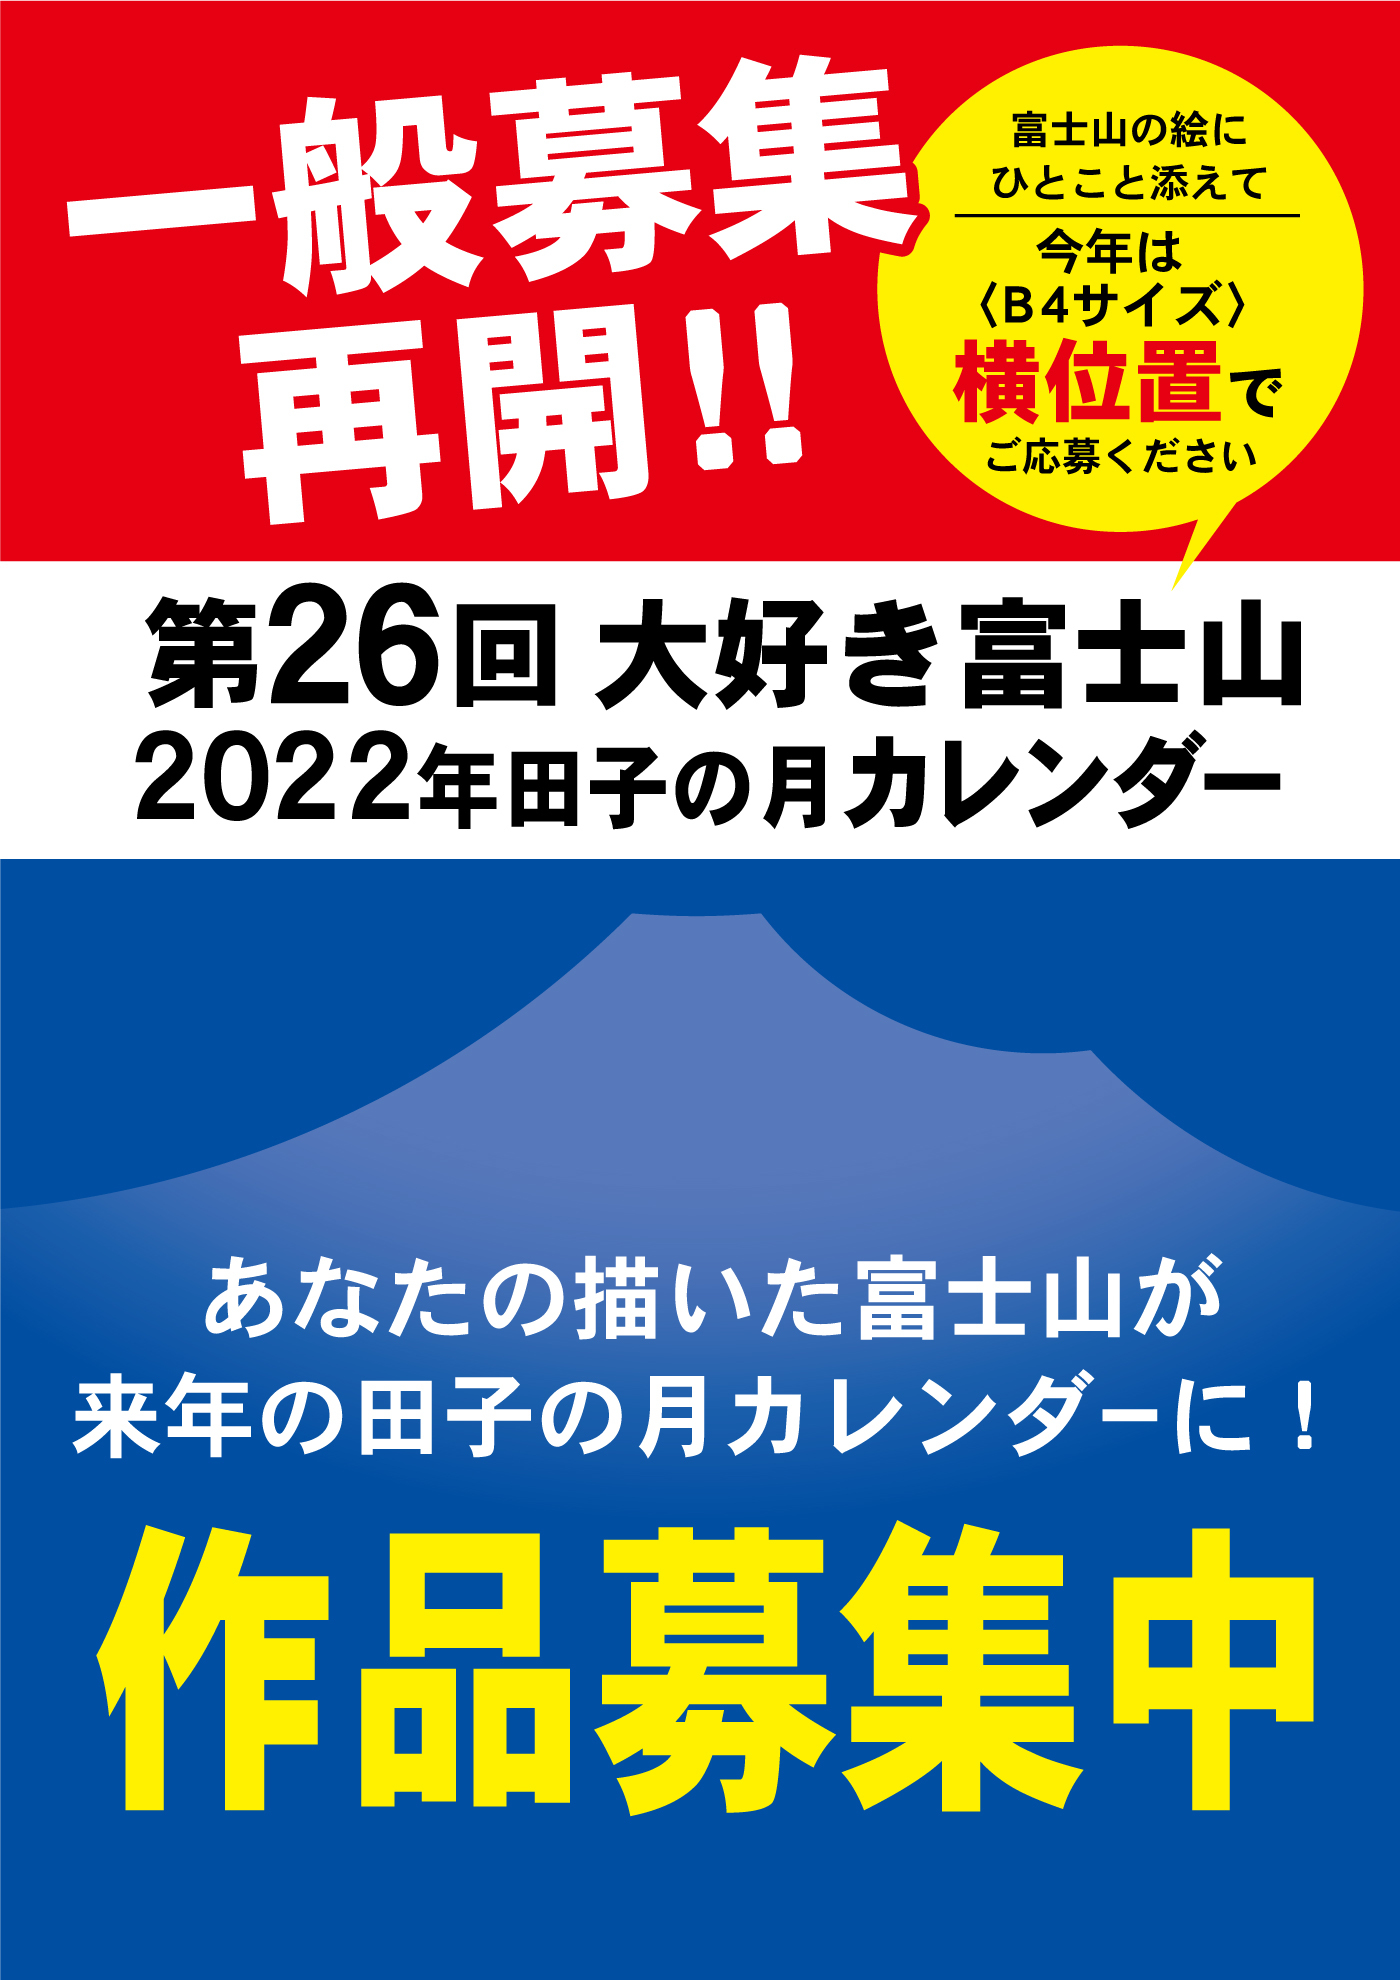 一般募集再開‼第26回大好き富士山2022年田子の月カレンダー富士山の絵にひとこと添えて今年は〈B4サイズ〉横位置でご応募くださいあなたの描いた富士山が来年の田子の月カレンダーに！作品募集中